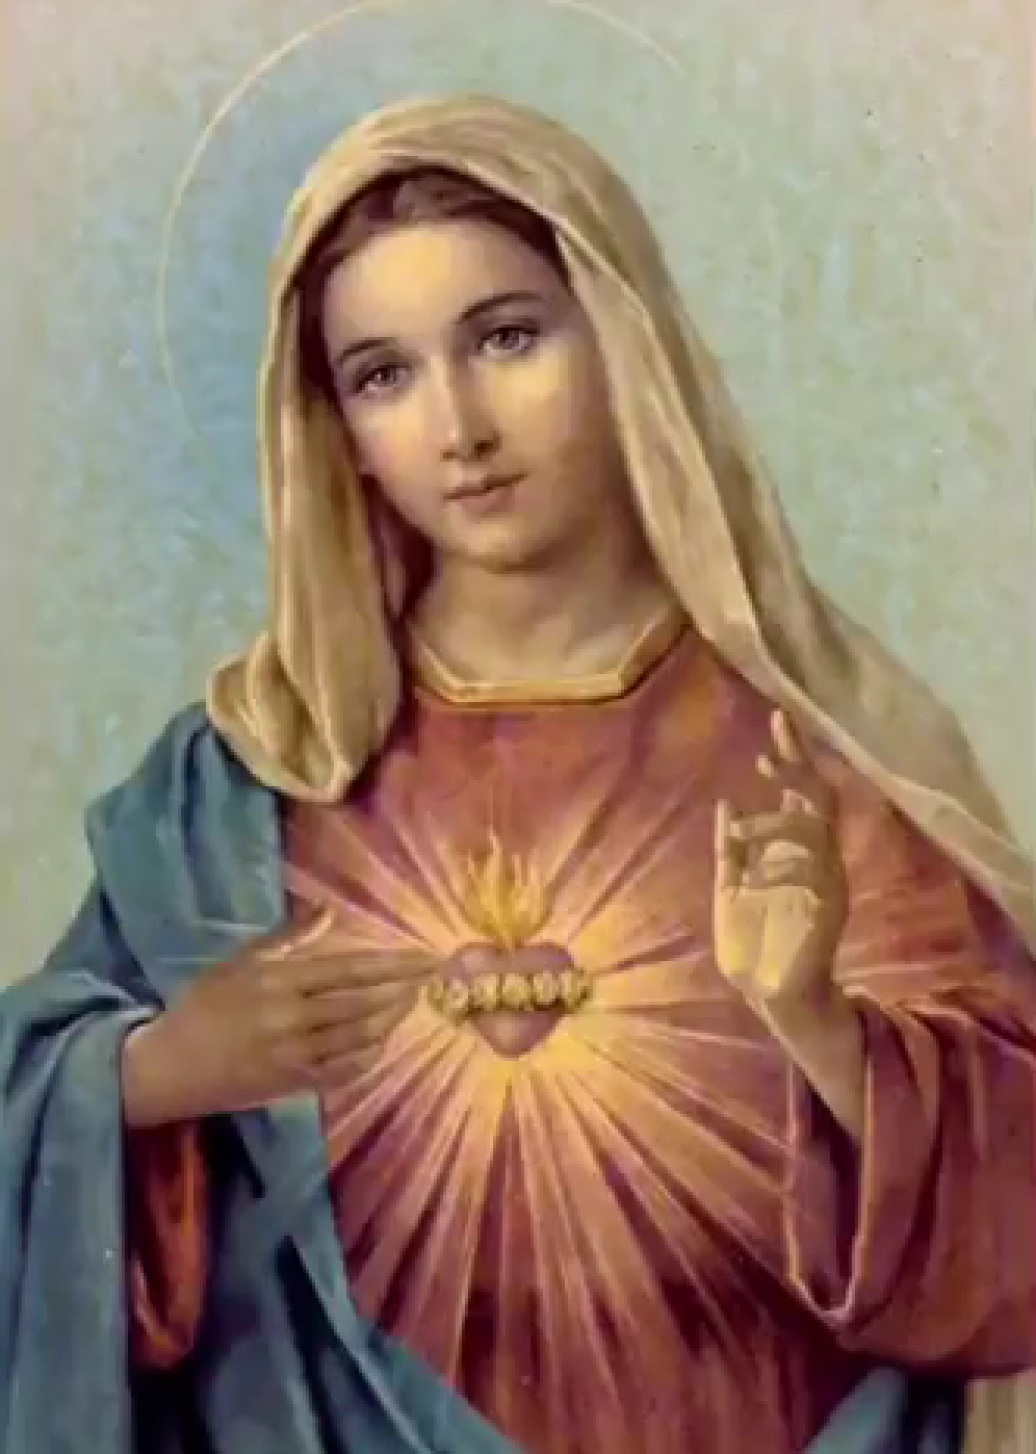 Sainte Vierge Marie